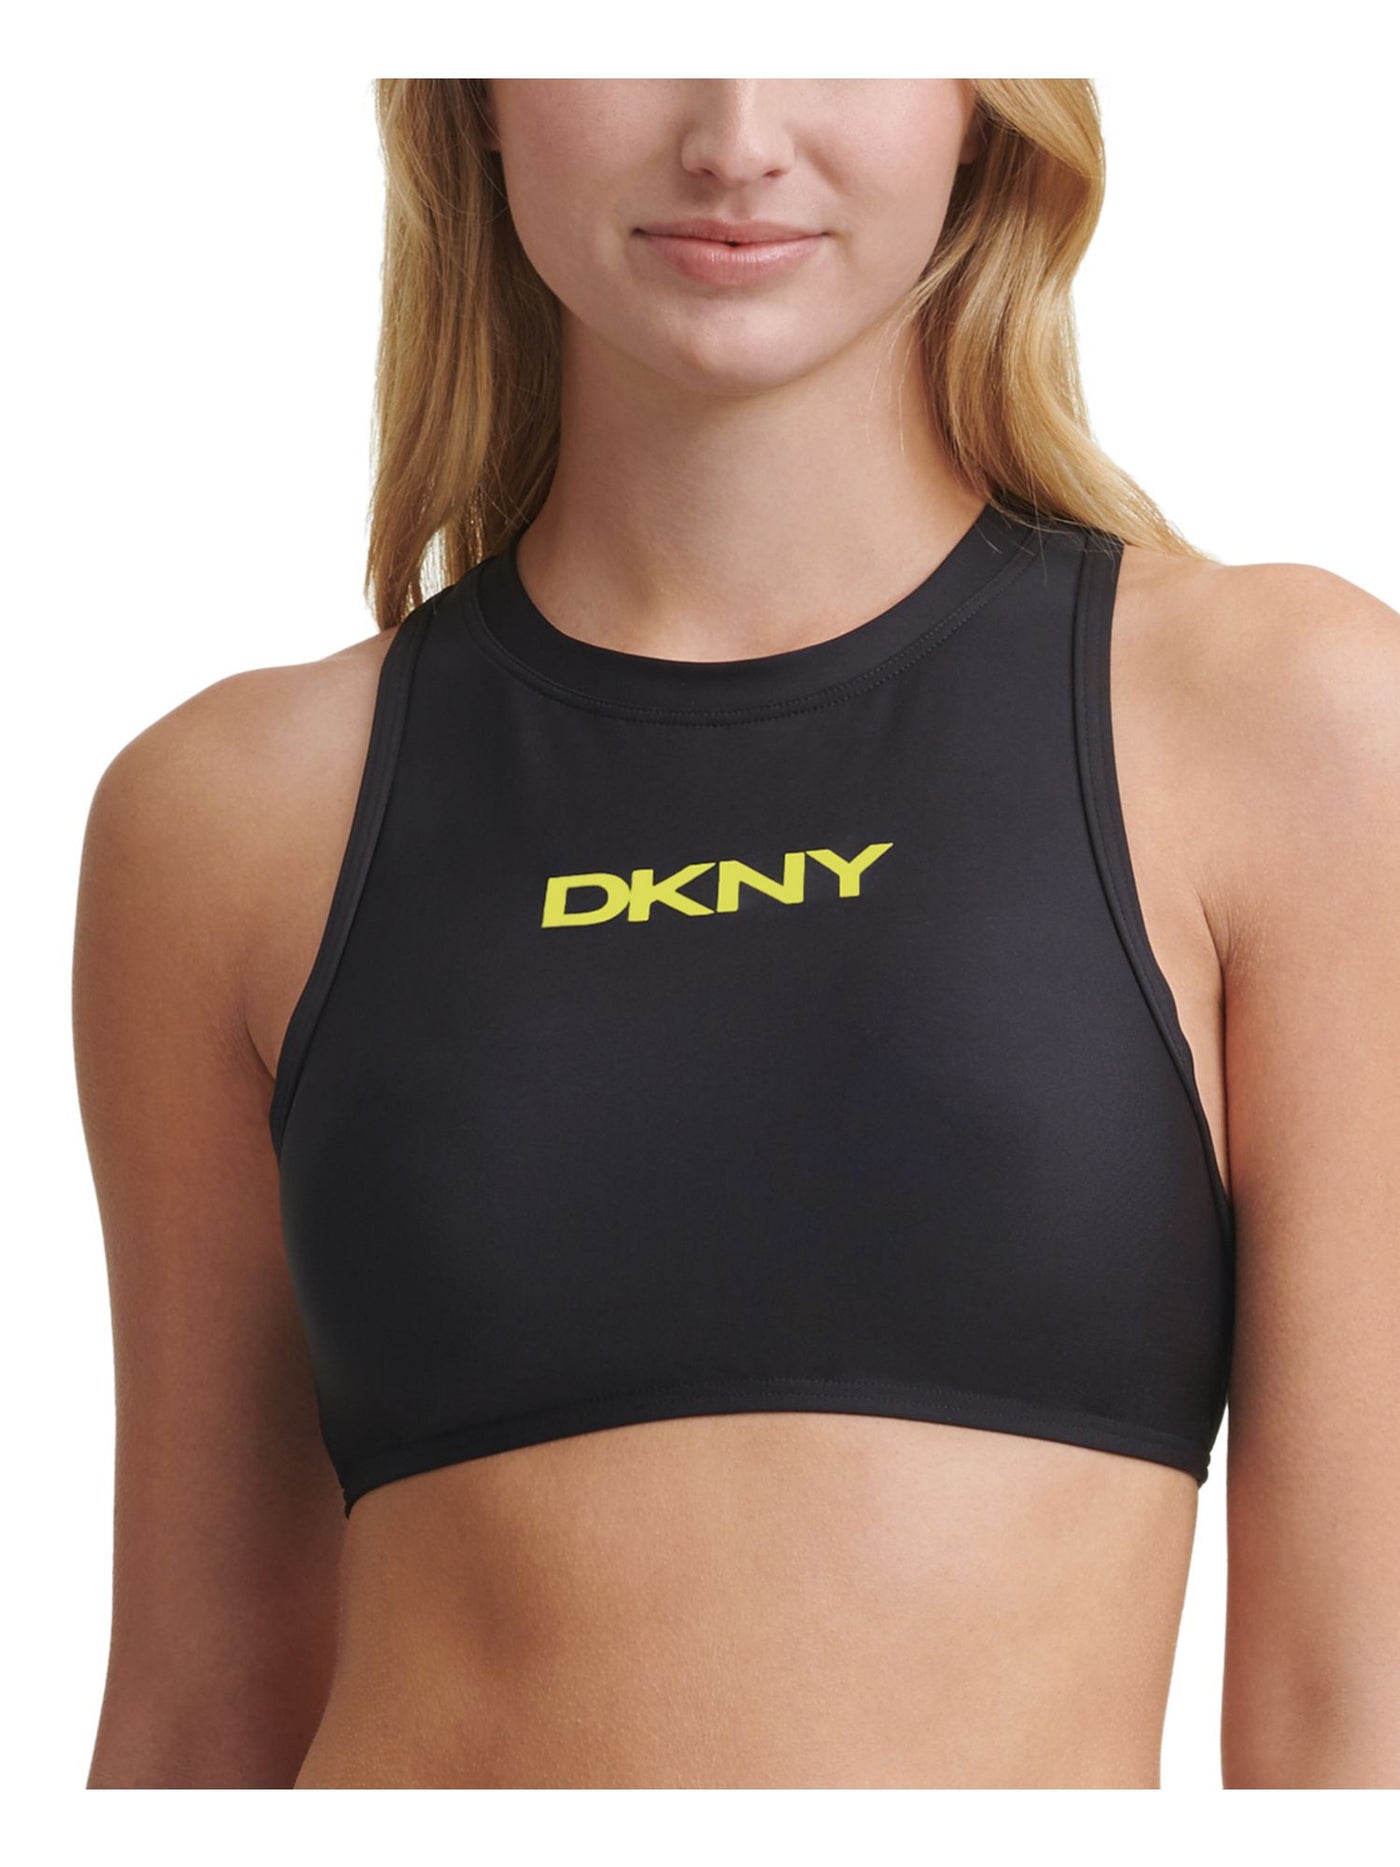 DKNY Women's Black Logo Stretch Zippered Sporty Swimsuit Top M